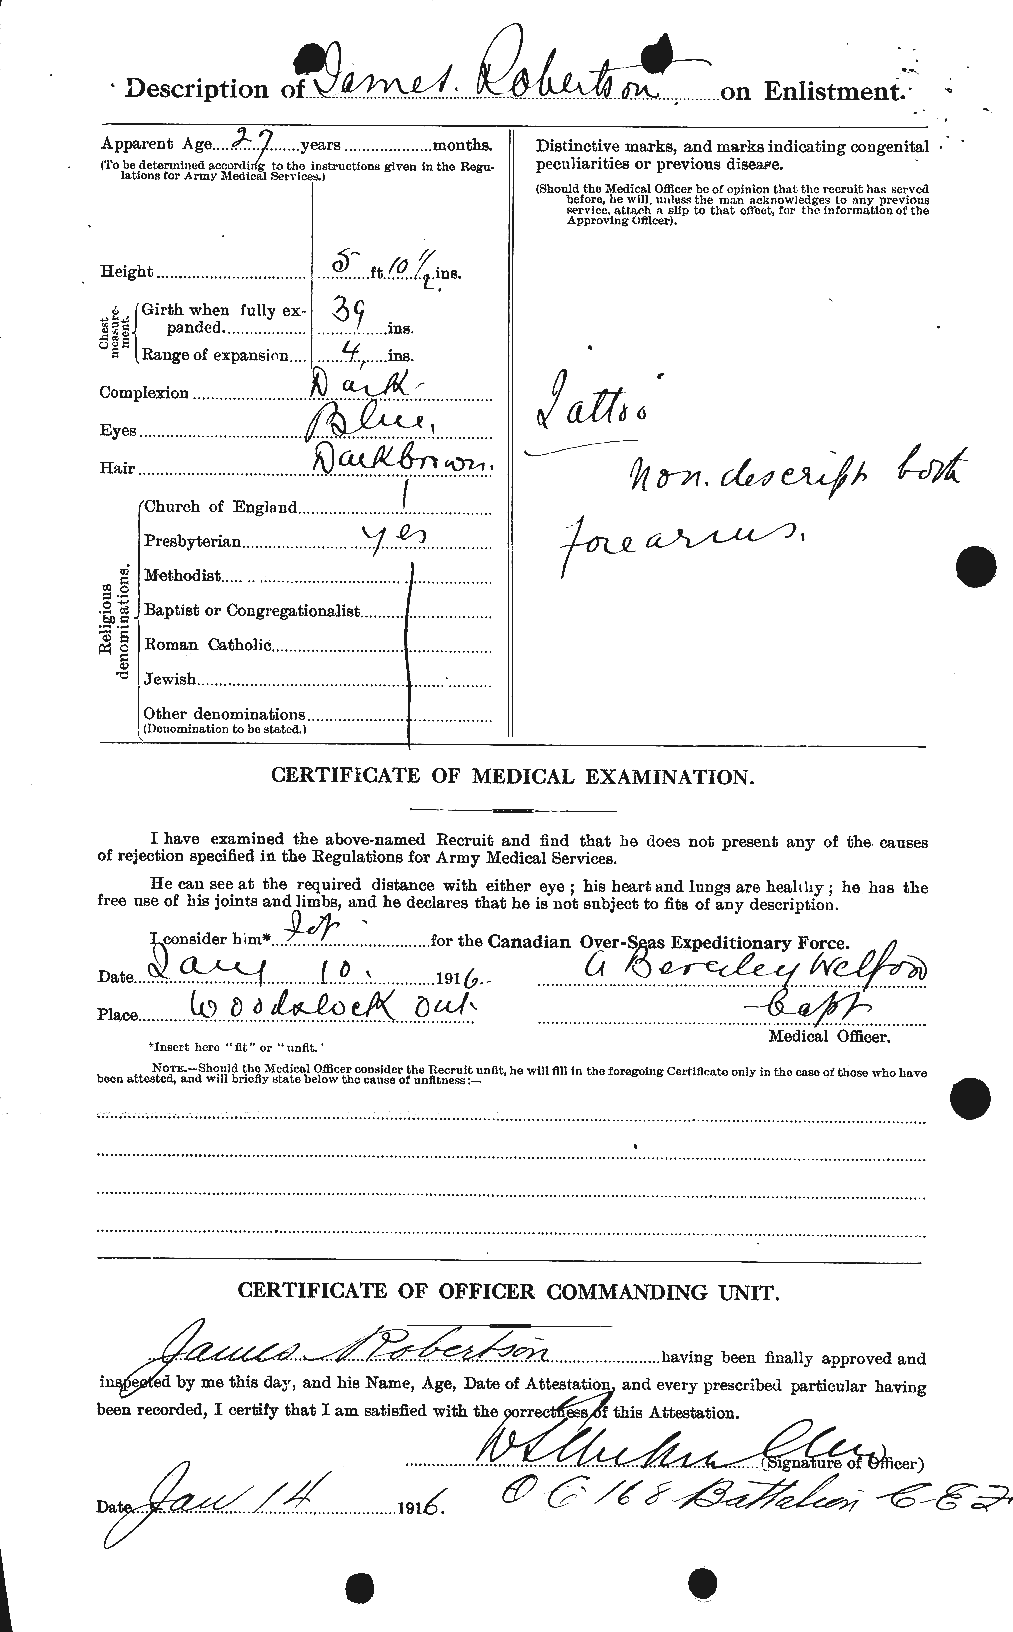 Dossiers du Personnel de la Première Guerre mondiale - CEC 608657b